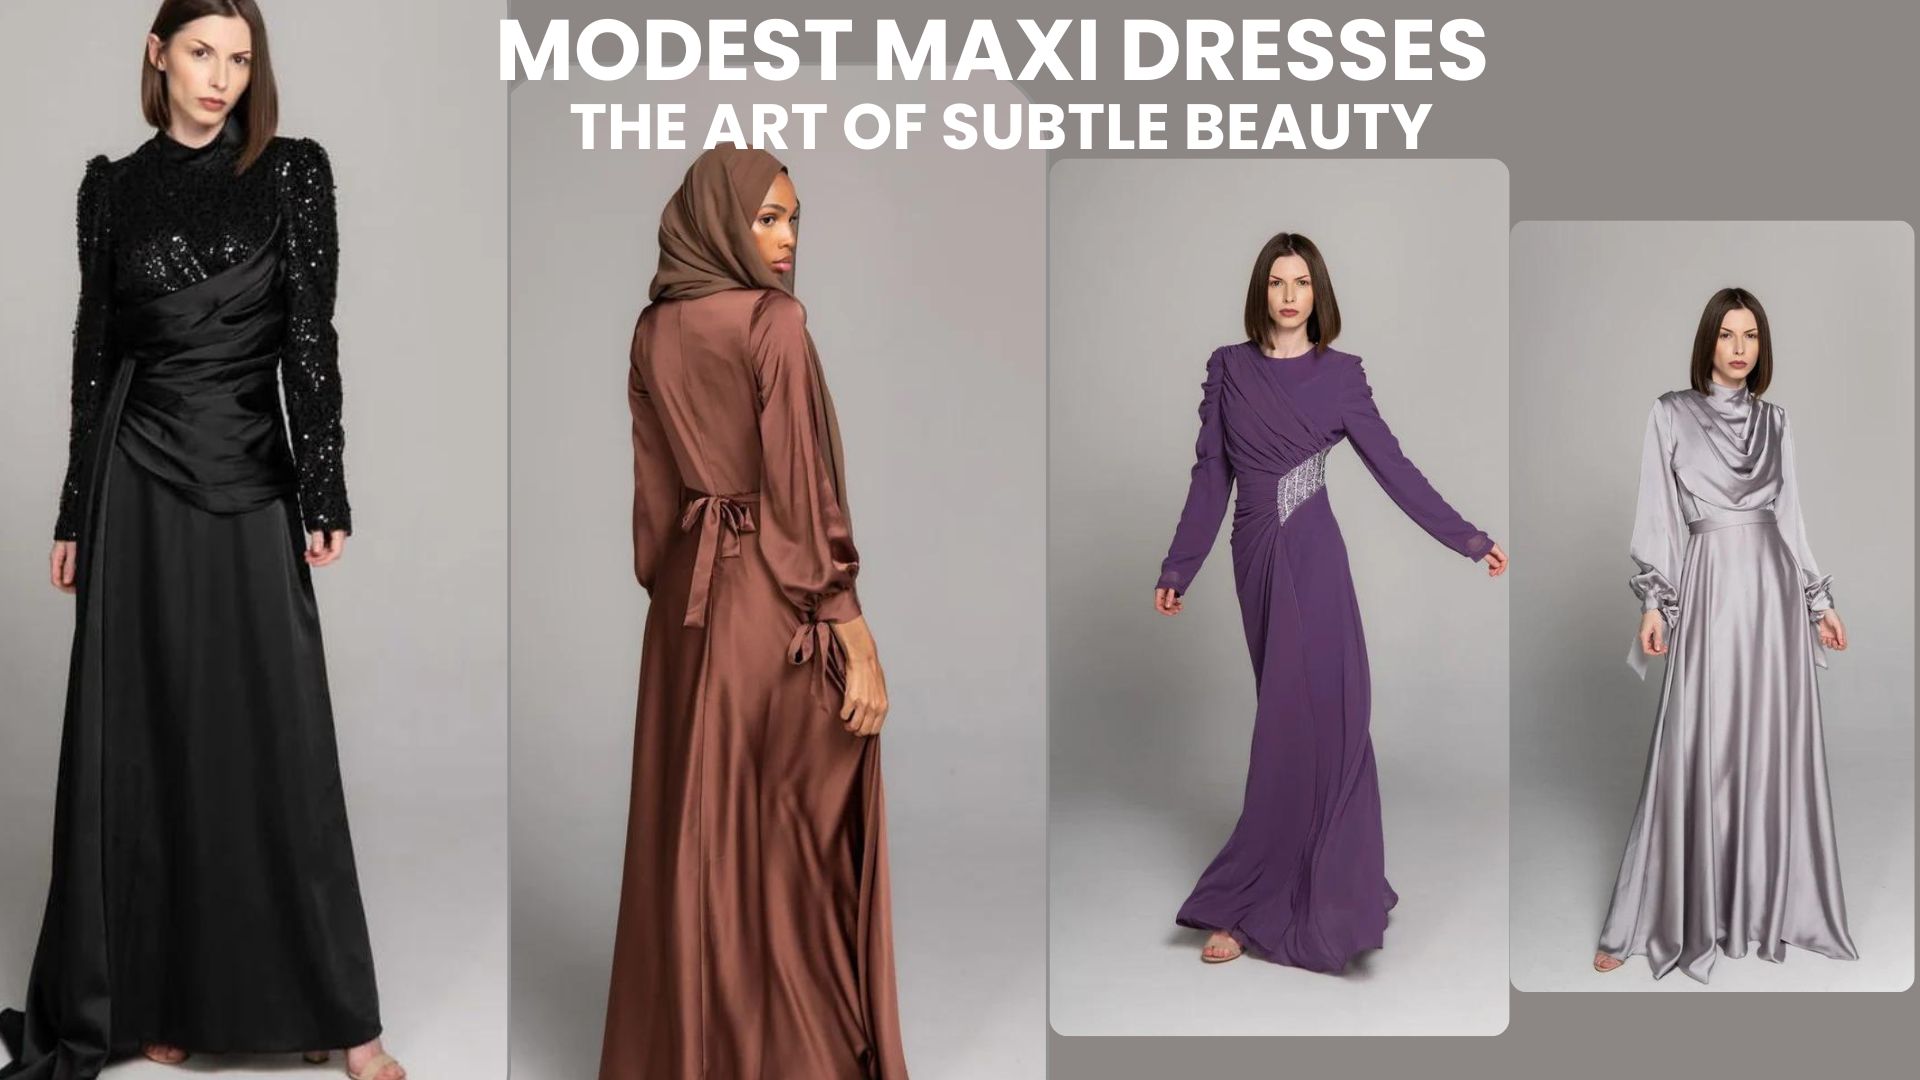 Modest Maxi Dresses: The Art of Subtle Beauty